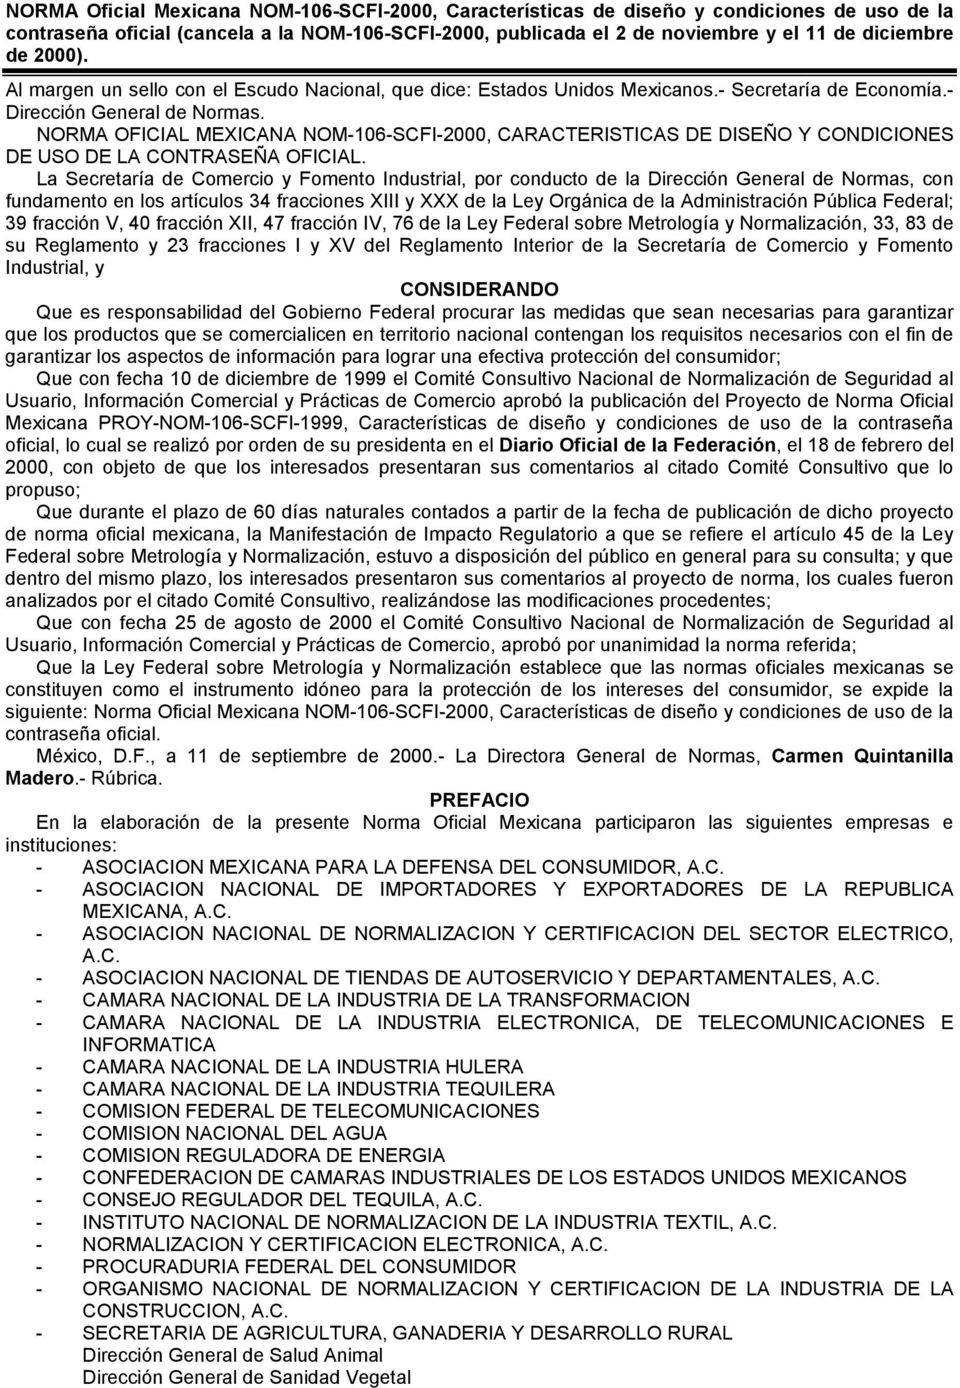 NORMA OFICIAL MEXICANA NOM-106-SCFI-2000, CARACTERISTICAS DE DISEÑO Y CONDICIONES DE USO DE LA CONTRASEÑA OFICIAL.